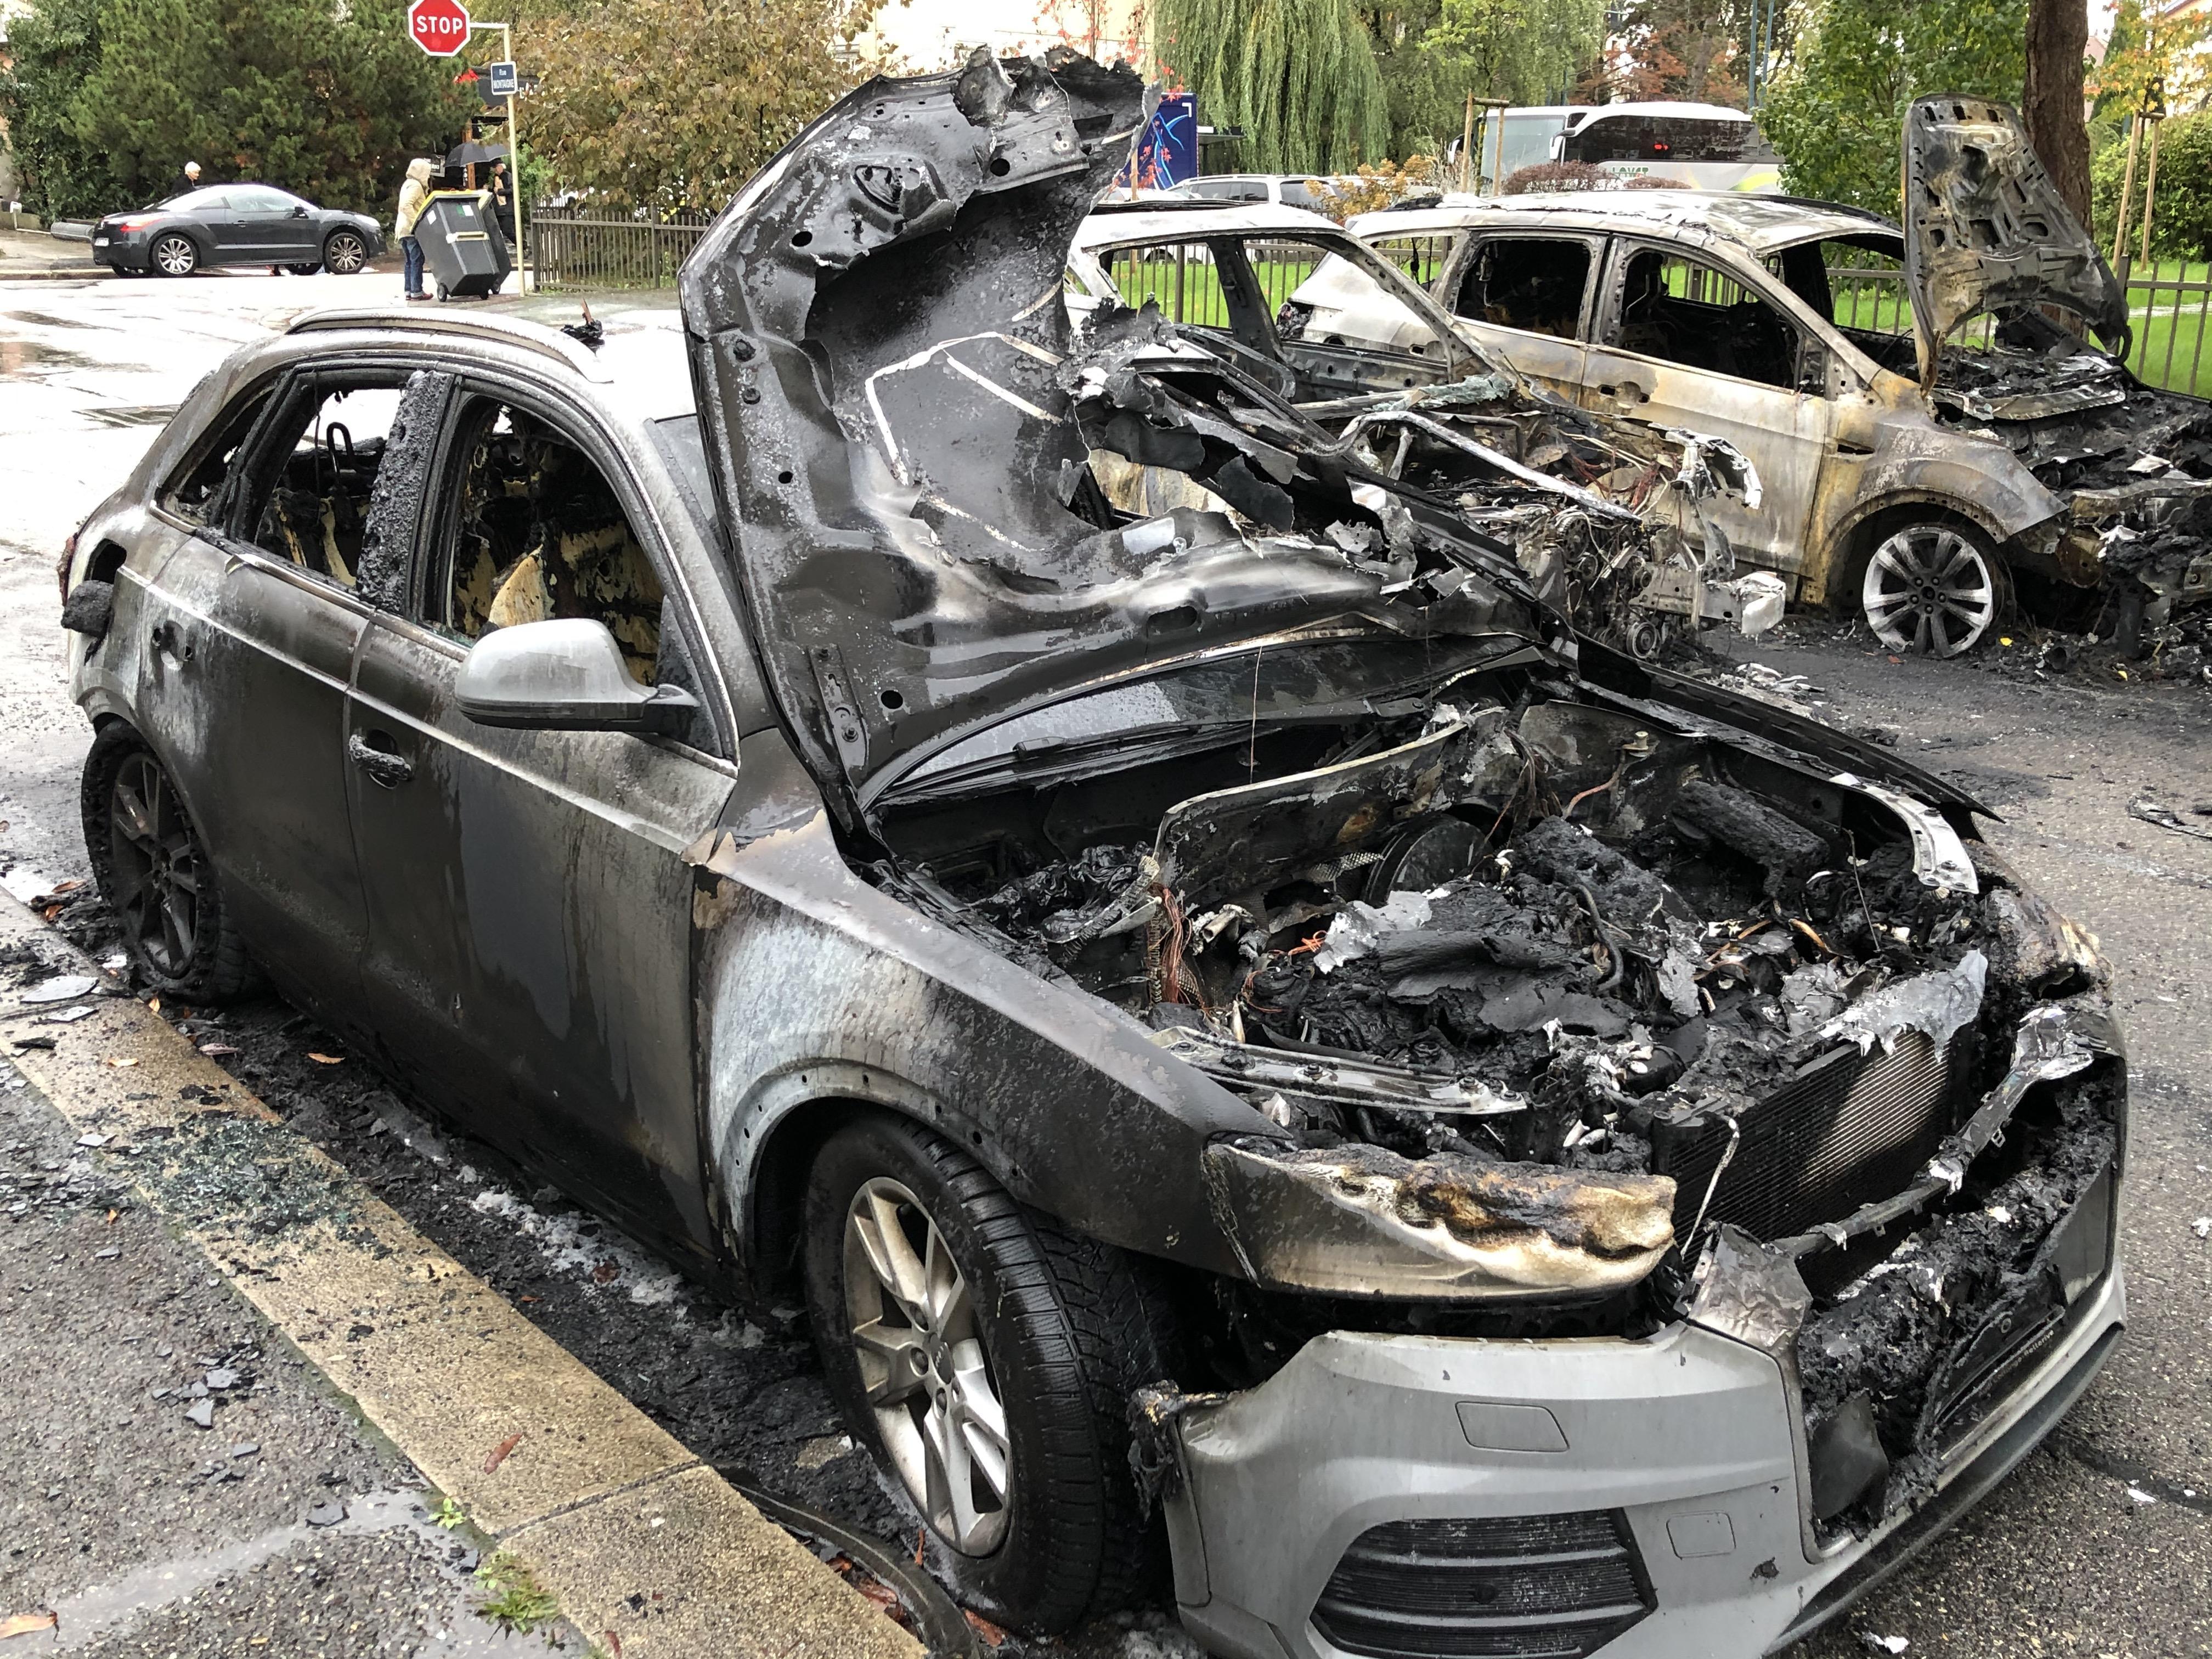 Annecy : une voiture brûle, les flammes se propagent à trois autres véhicules